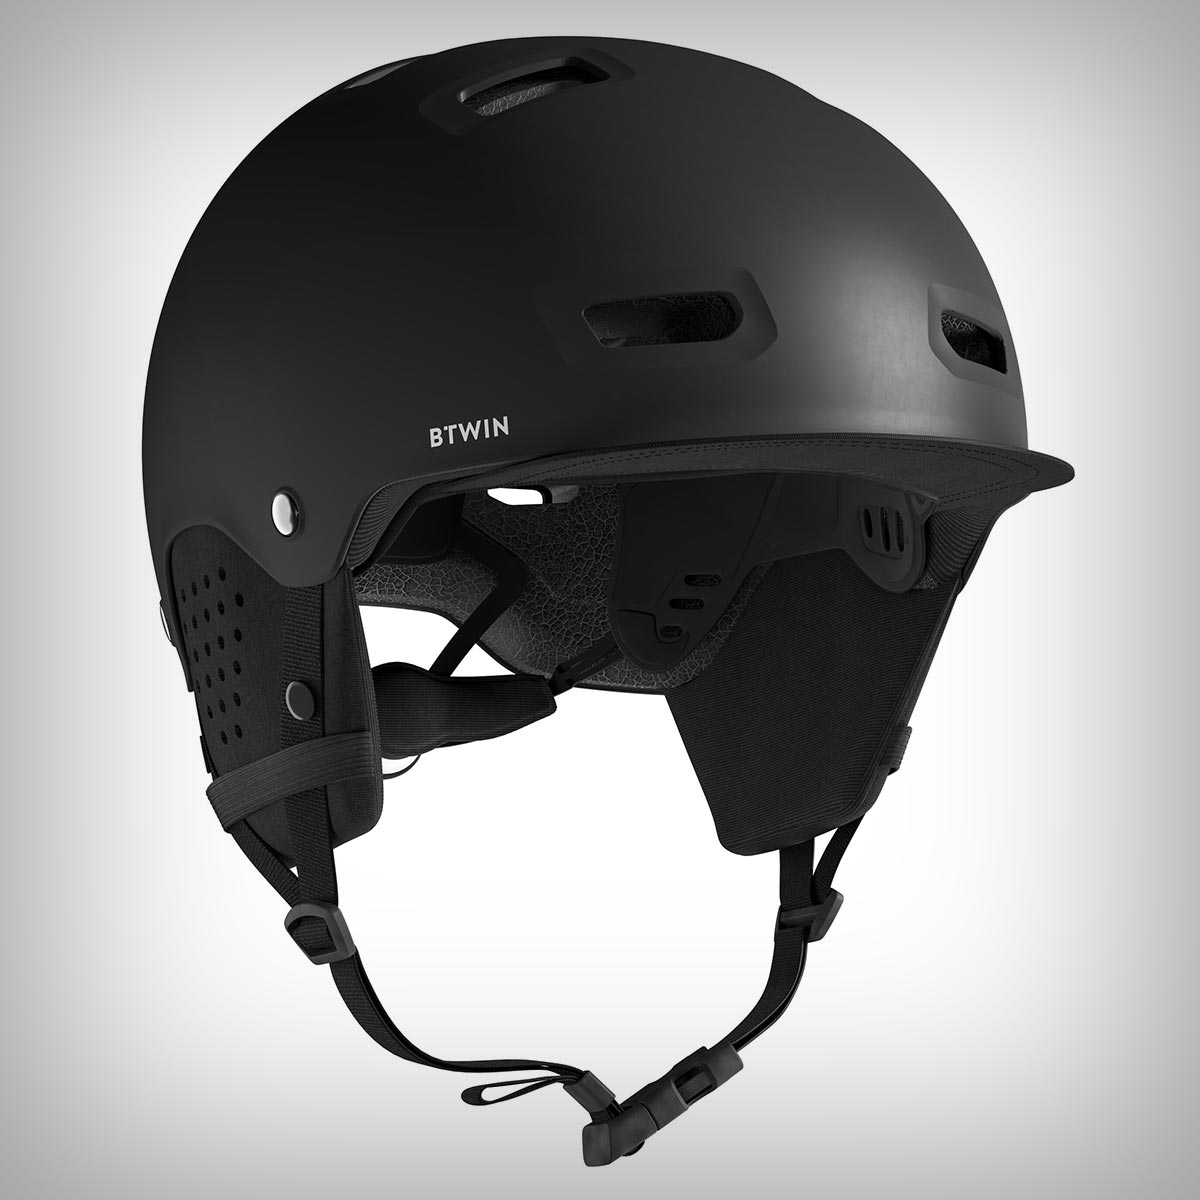 Btwin Bol 500, un casco cómodo en todas las estaciones con orejeras desmontables, visera fija y un precio inmejorable